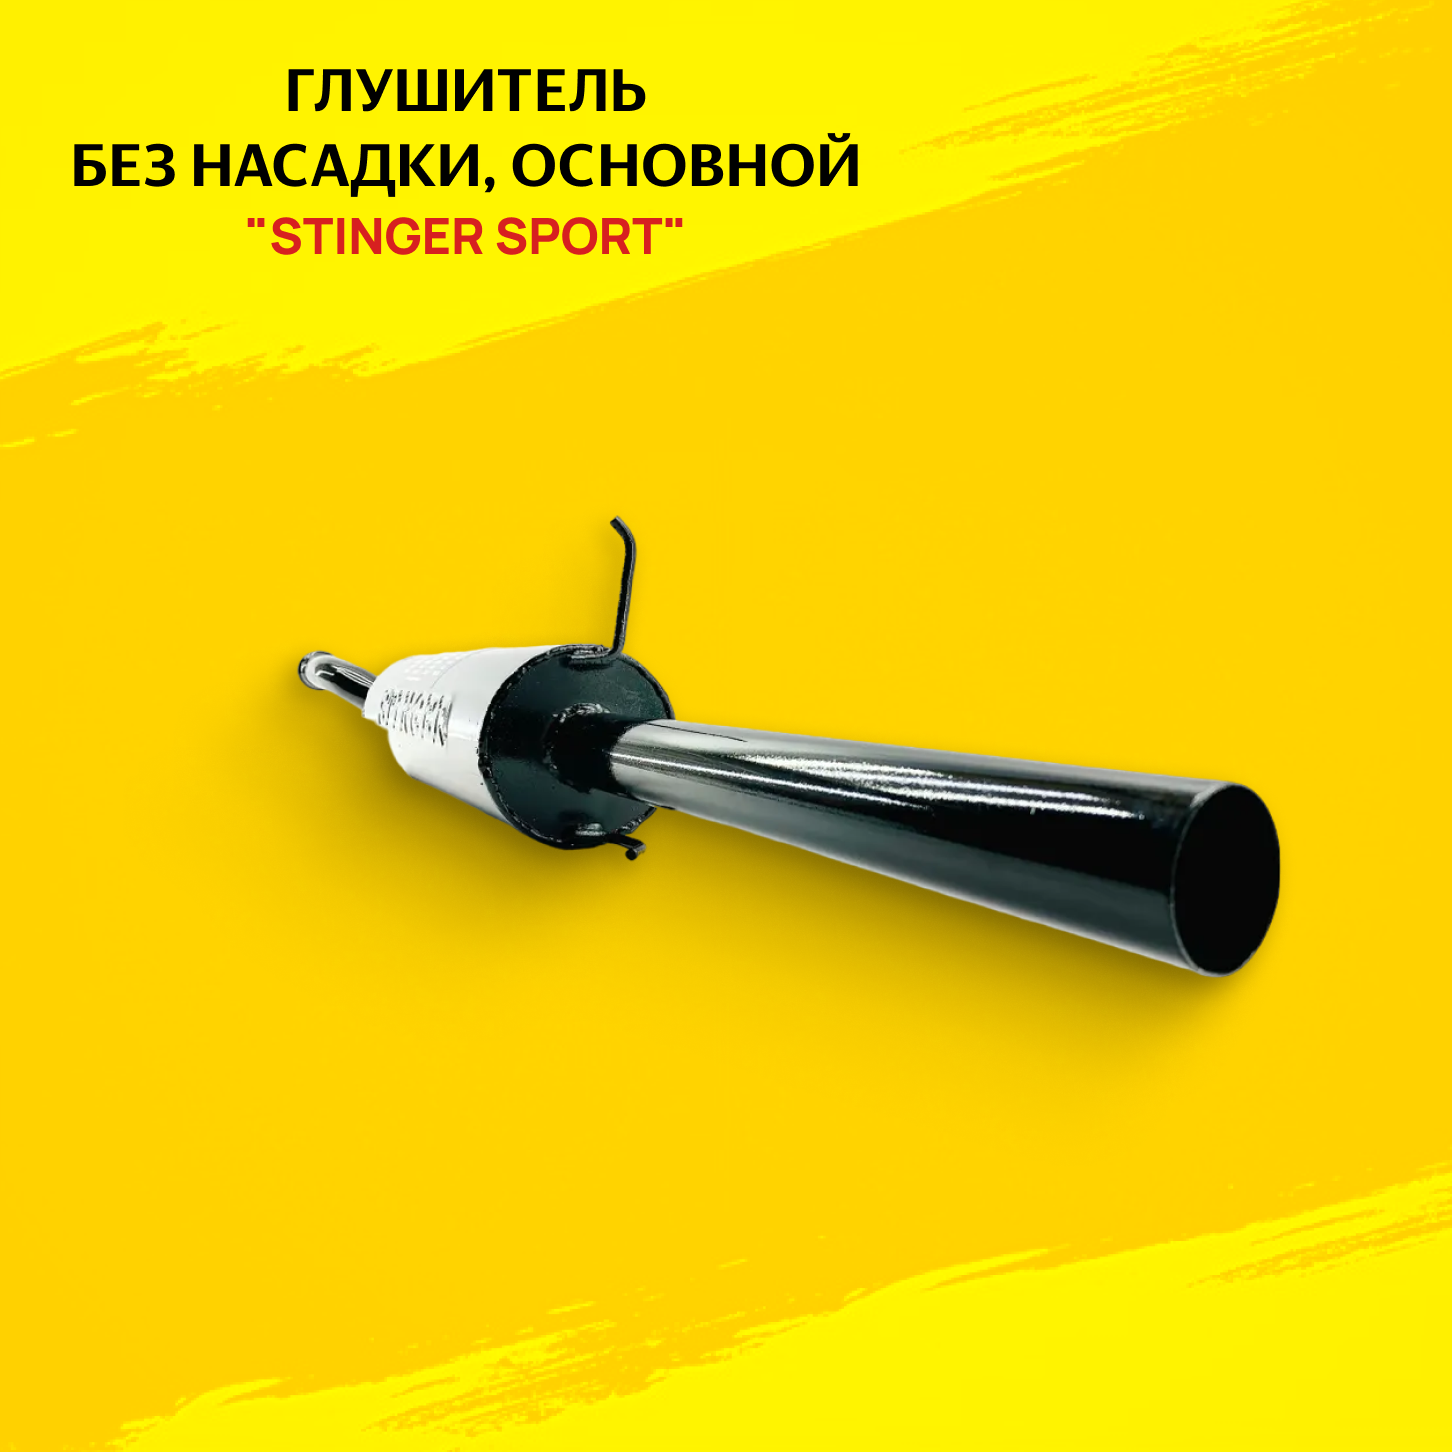 Глушитель для а/м ВАЗ 21099 без насадки "Stinger Sport" основной